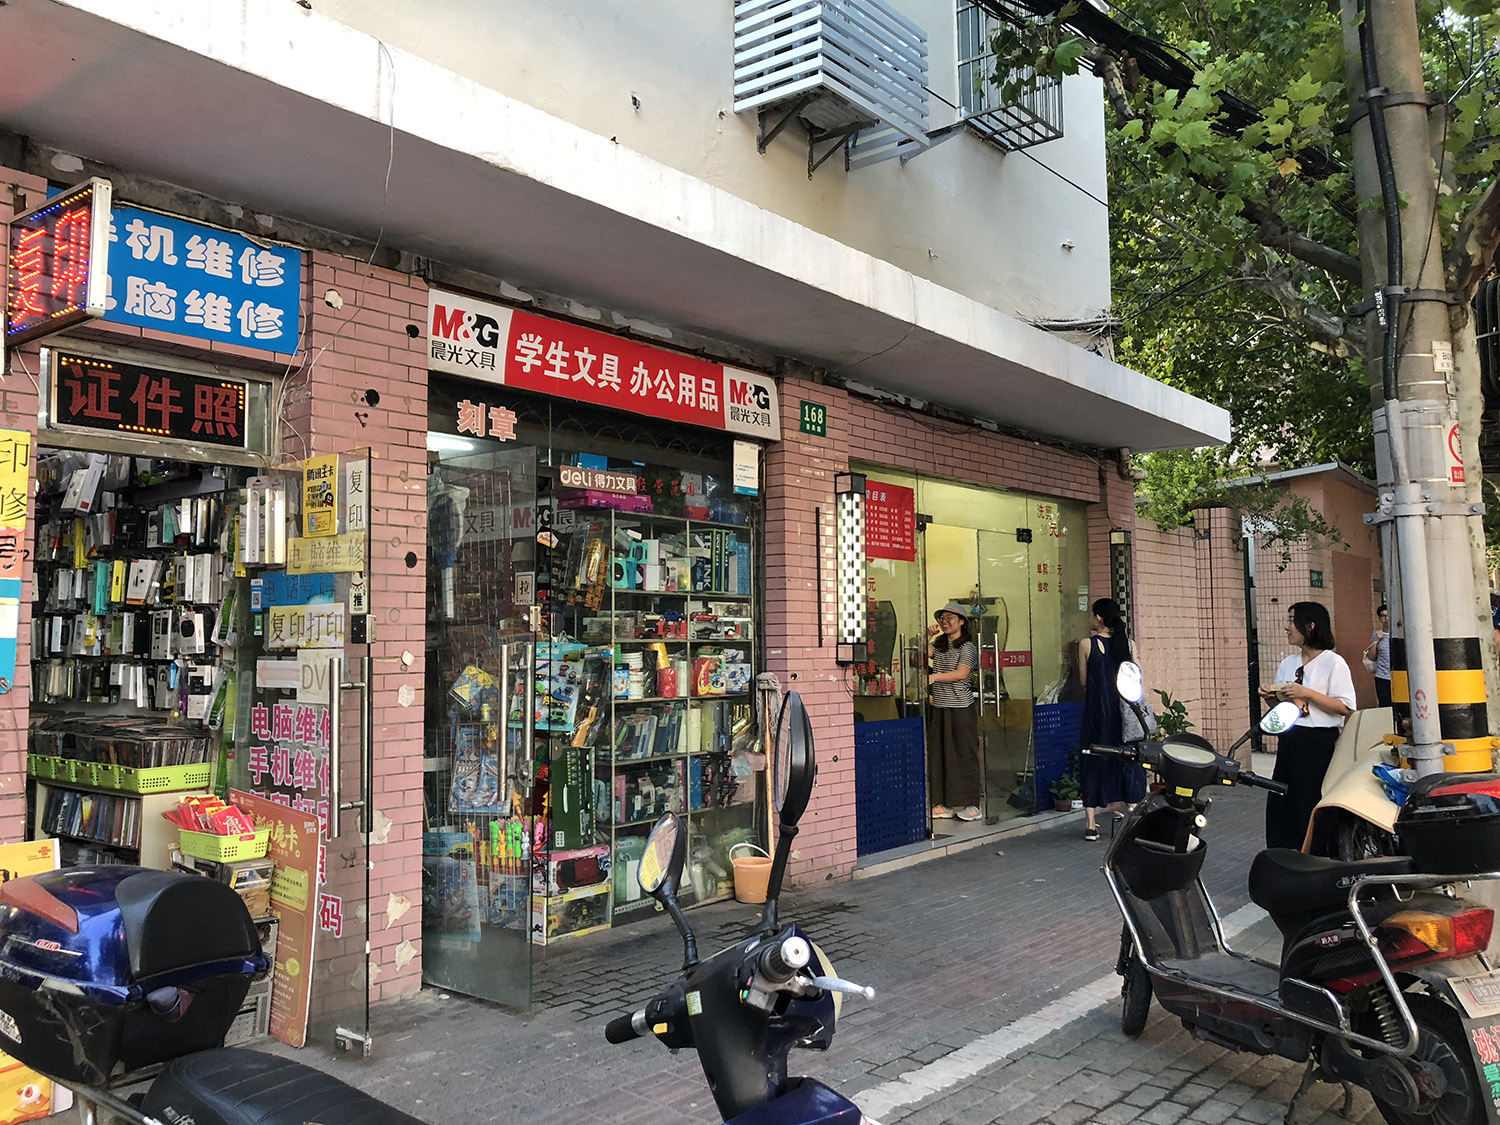 小招牌, 小招牌製造所, 上海, 都市酵母, 一條街, 招牌, signboard, shanghai, workshop, 番禺路, 長寧區 